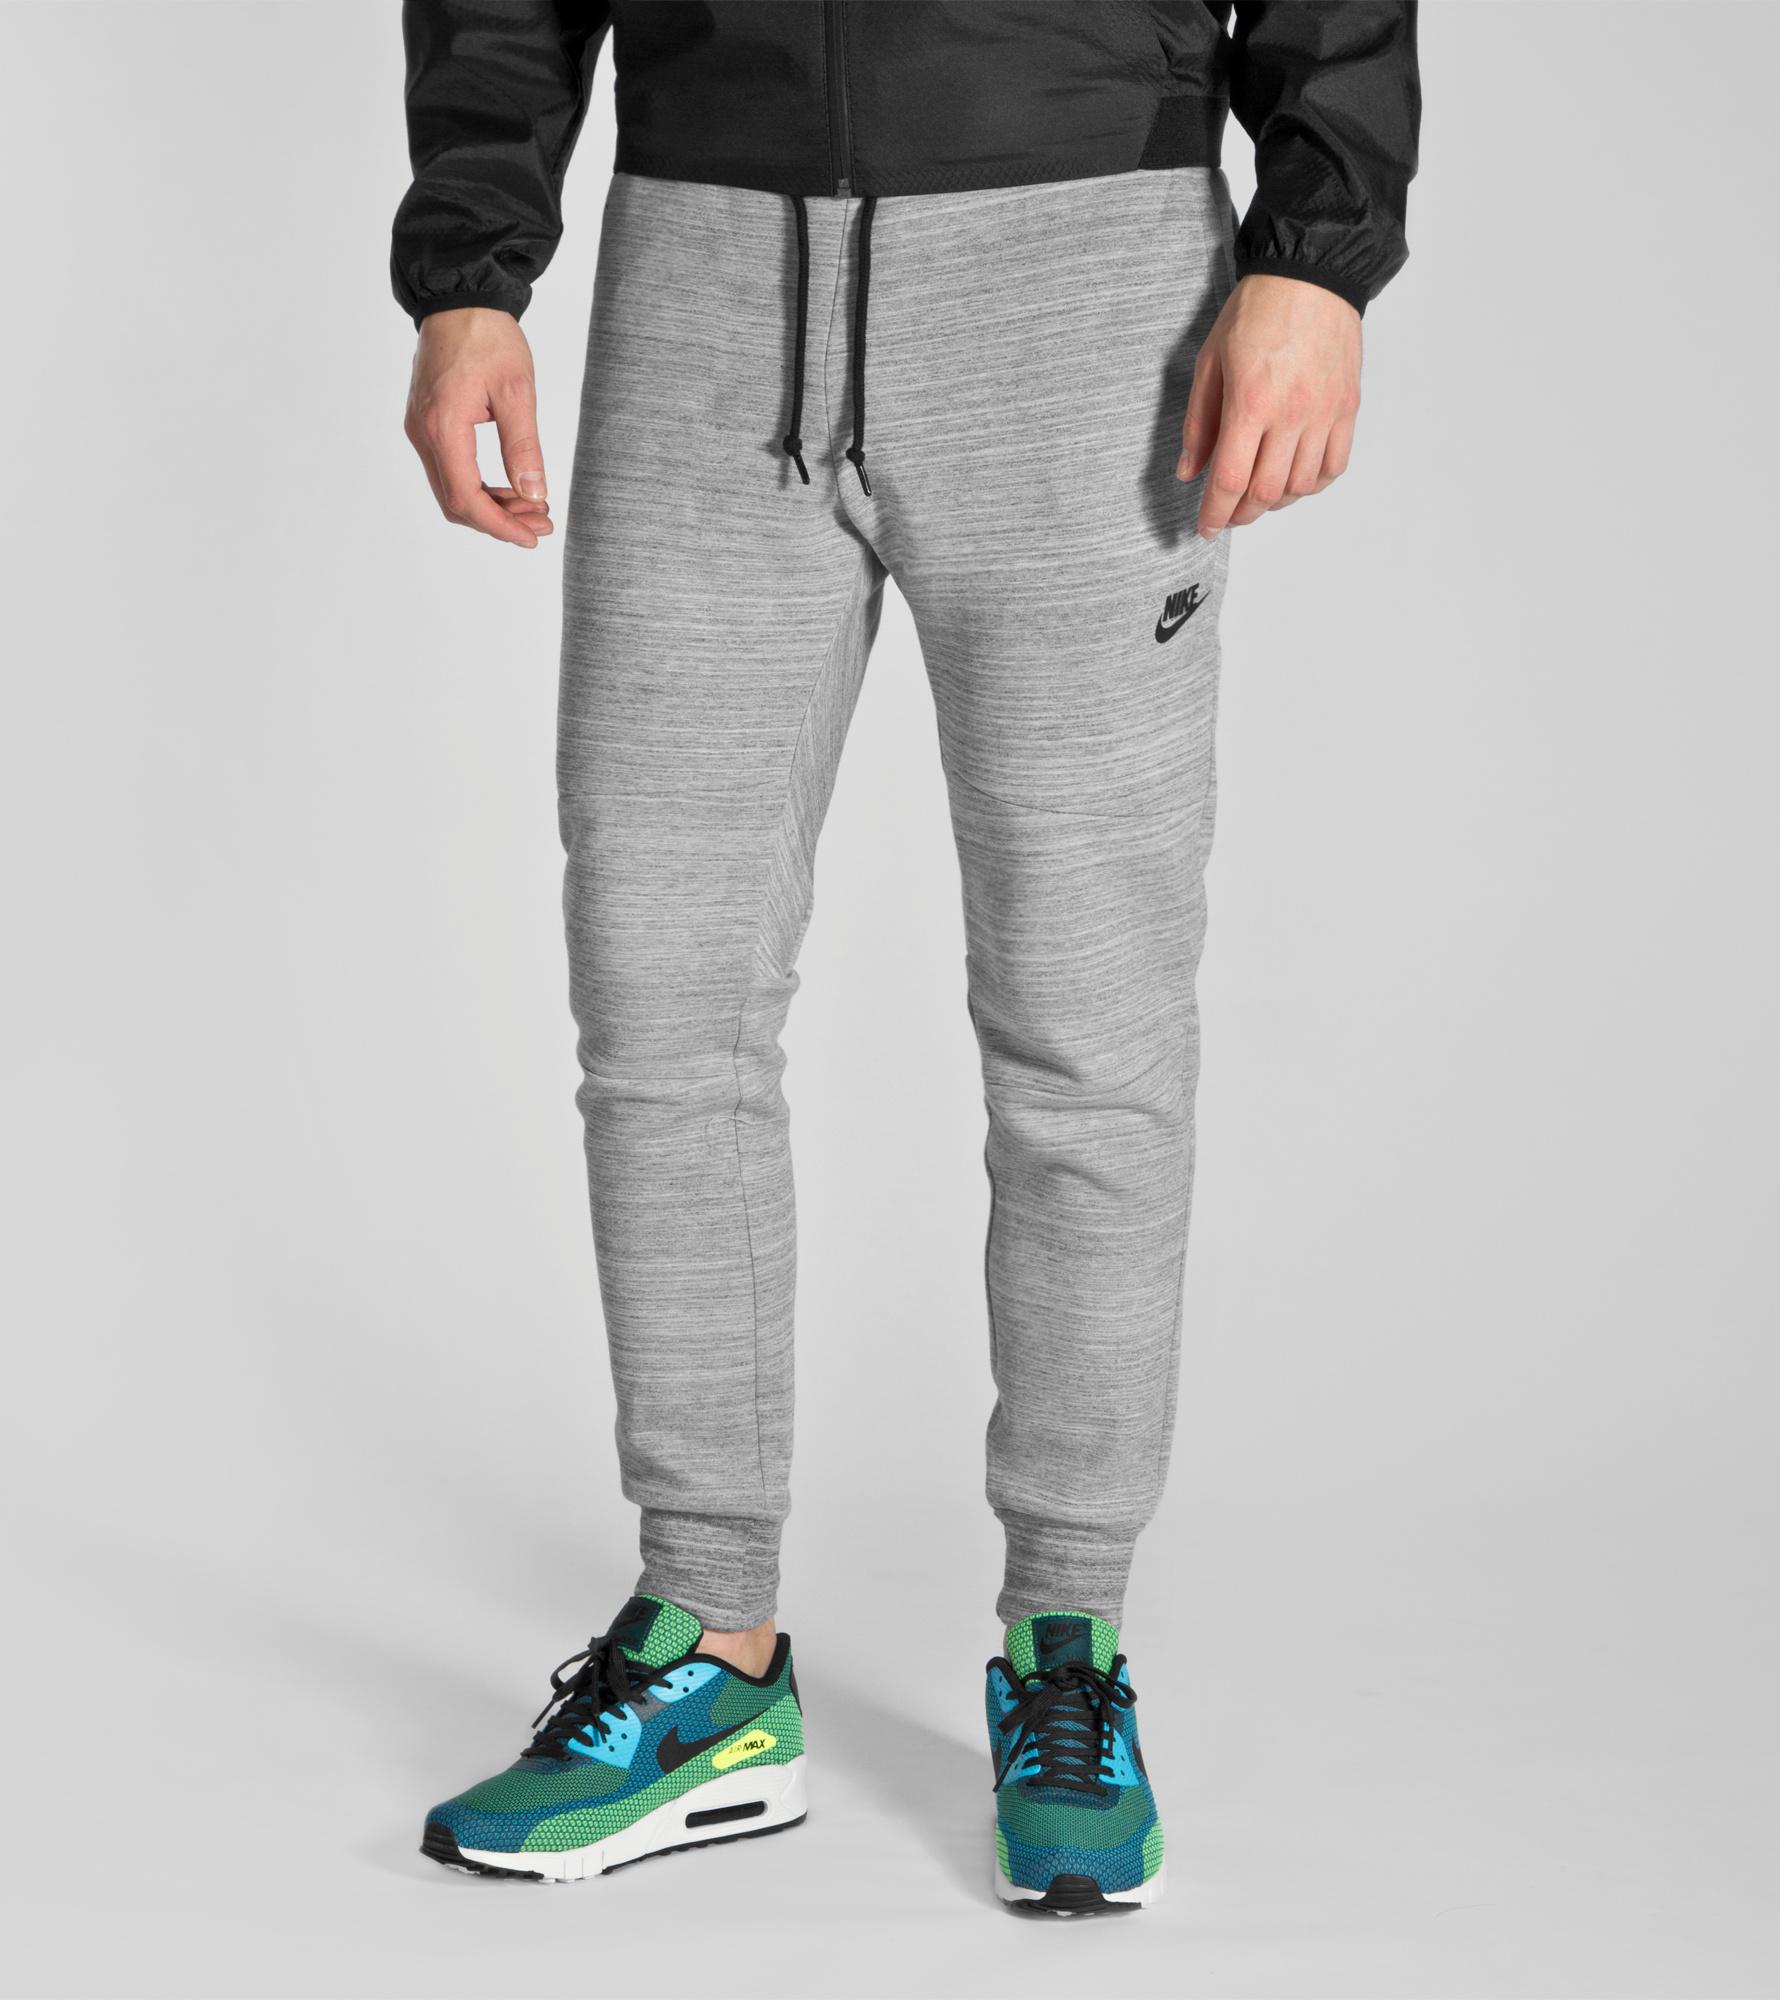 Buy Nike Tech Fleece Pants - Mens Fashion Online at Size?